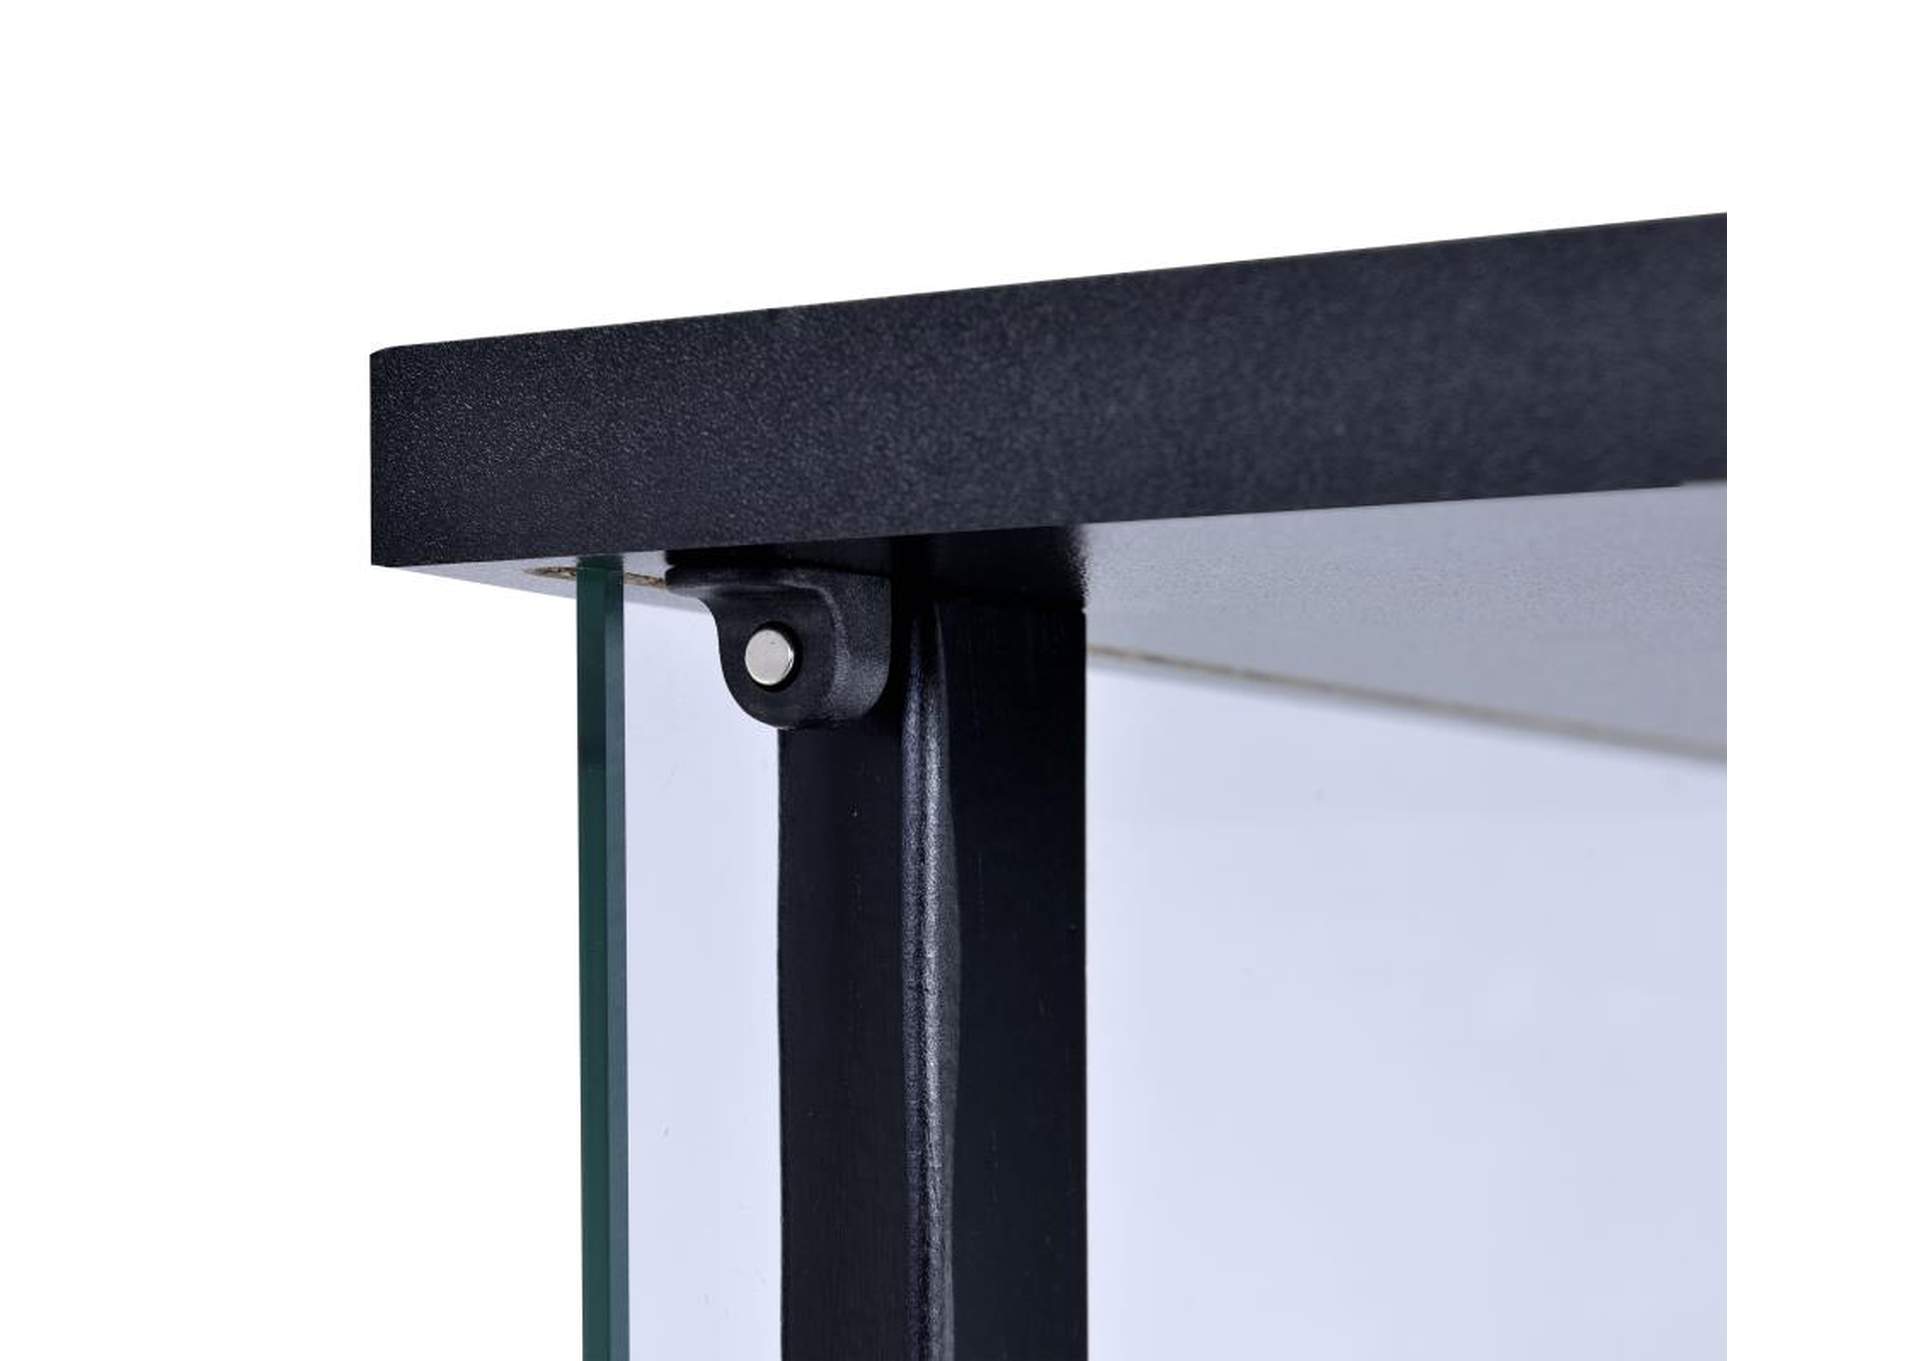 3-shelf Glass Curio Cabinet Black and Clear,Coaster Furniture